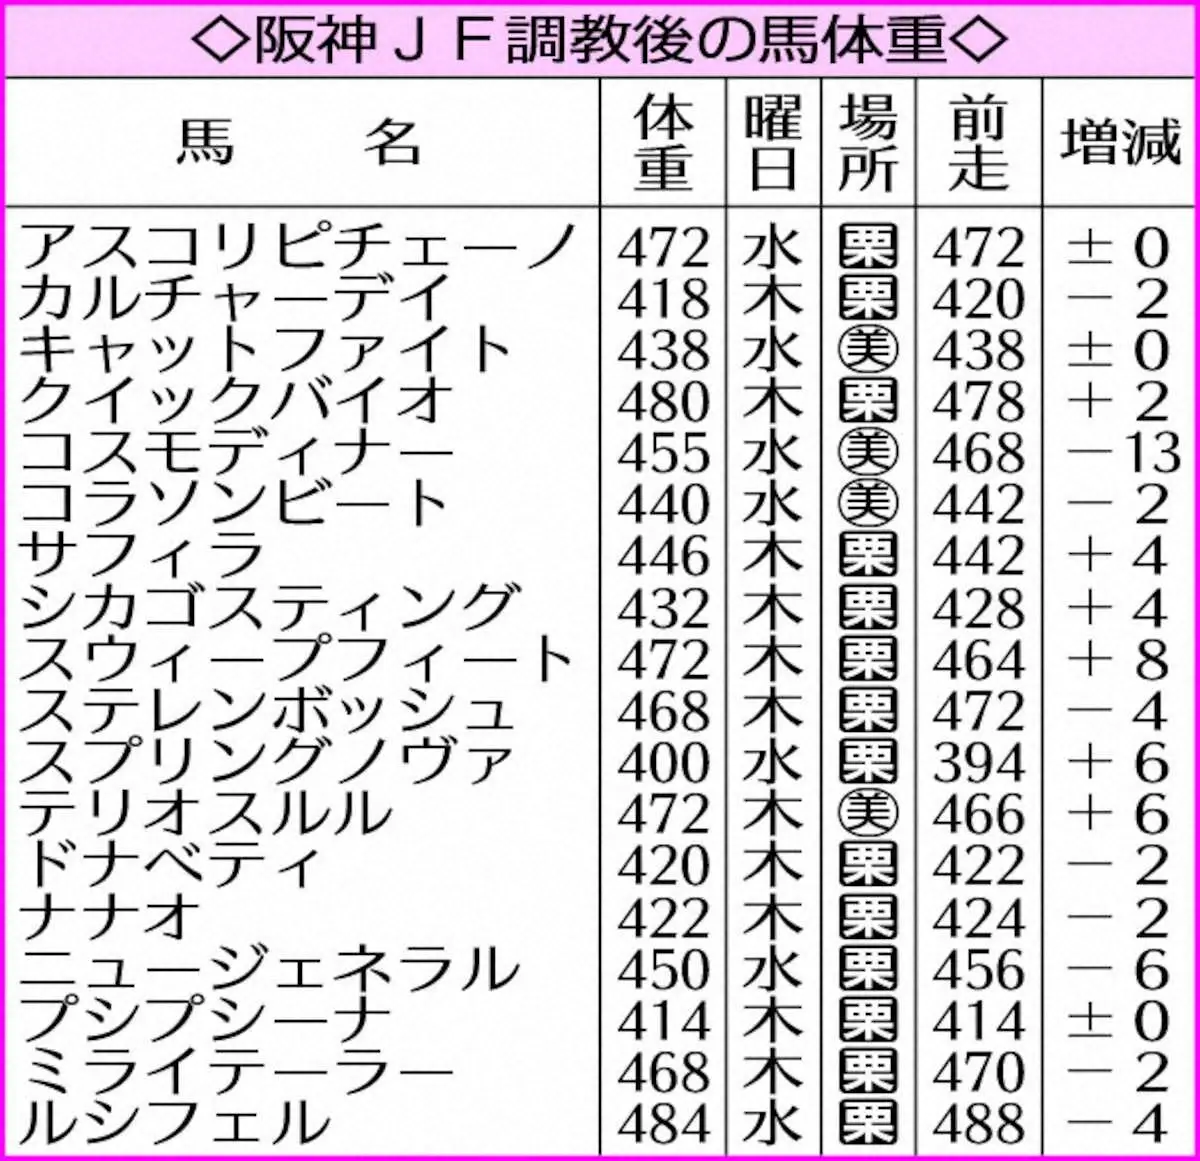 【阪神JF】2桁増減はコスモディナーのみ　調教後馬体重発表